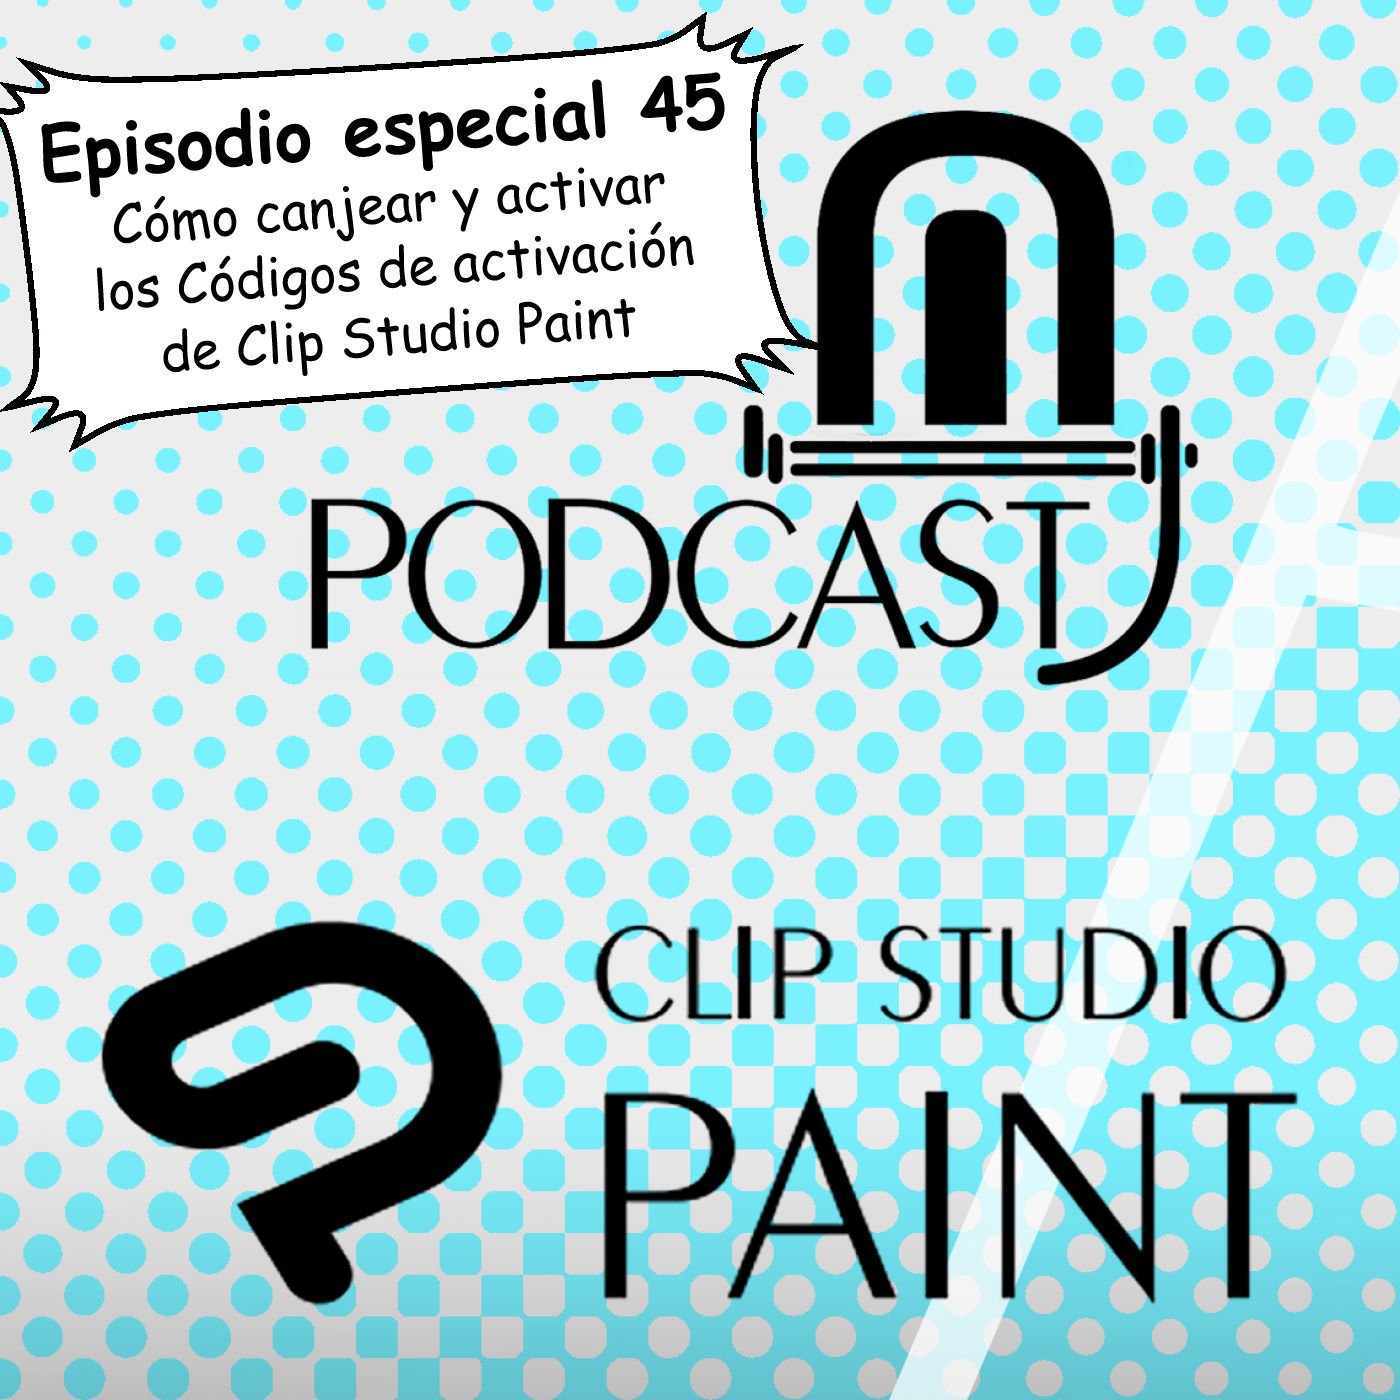 CSP especial 45. Cómo canjear y activar los Códigos de activación de Clip Studio Paint